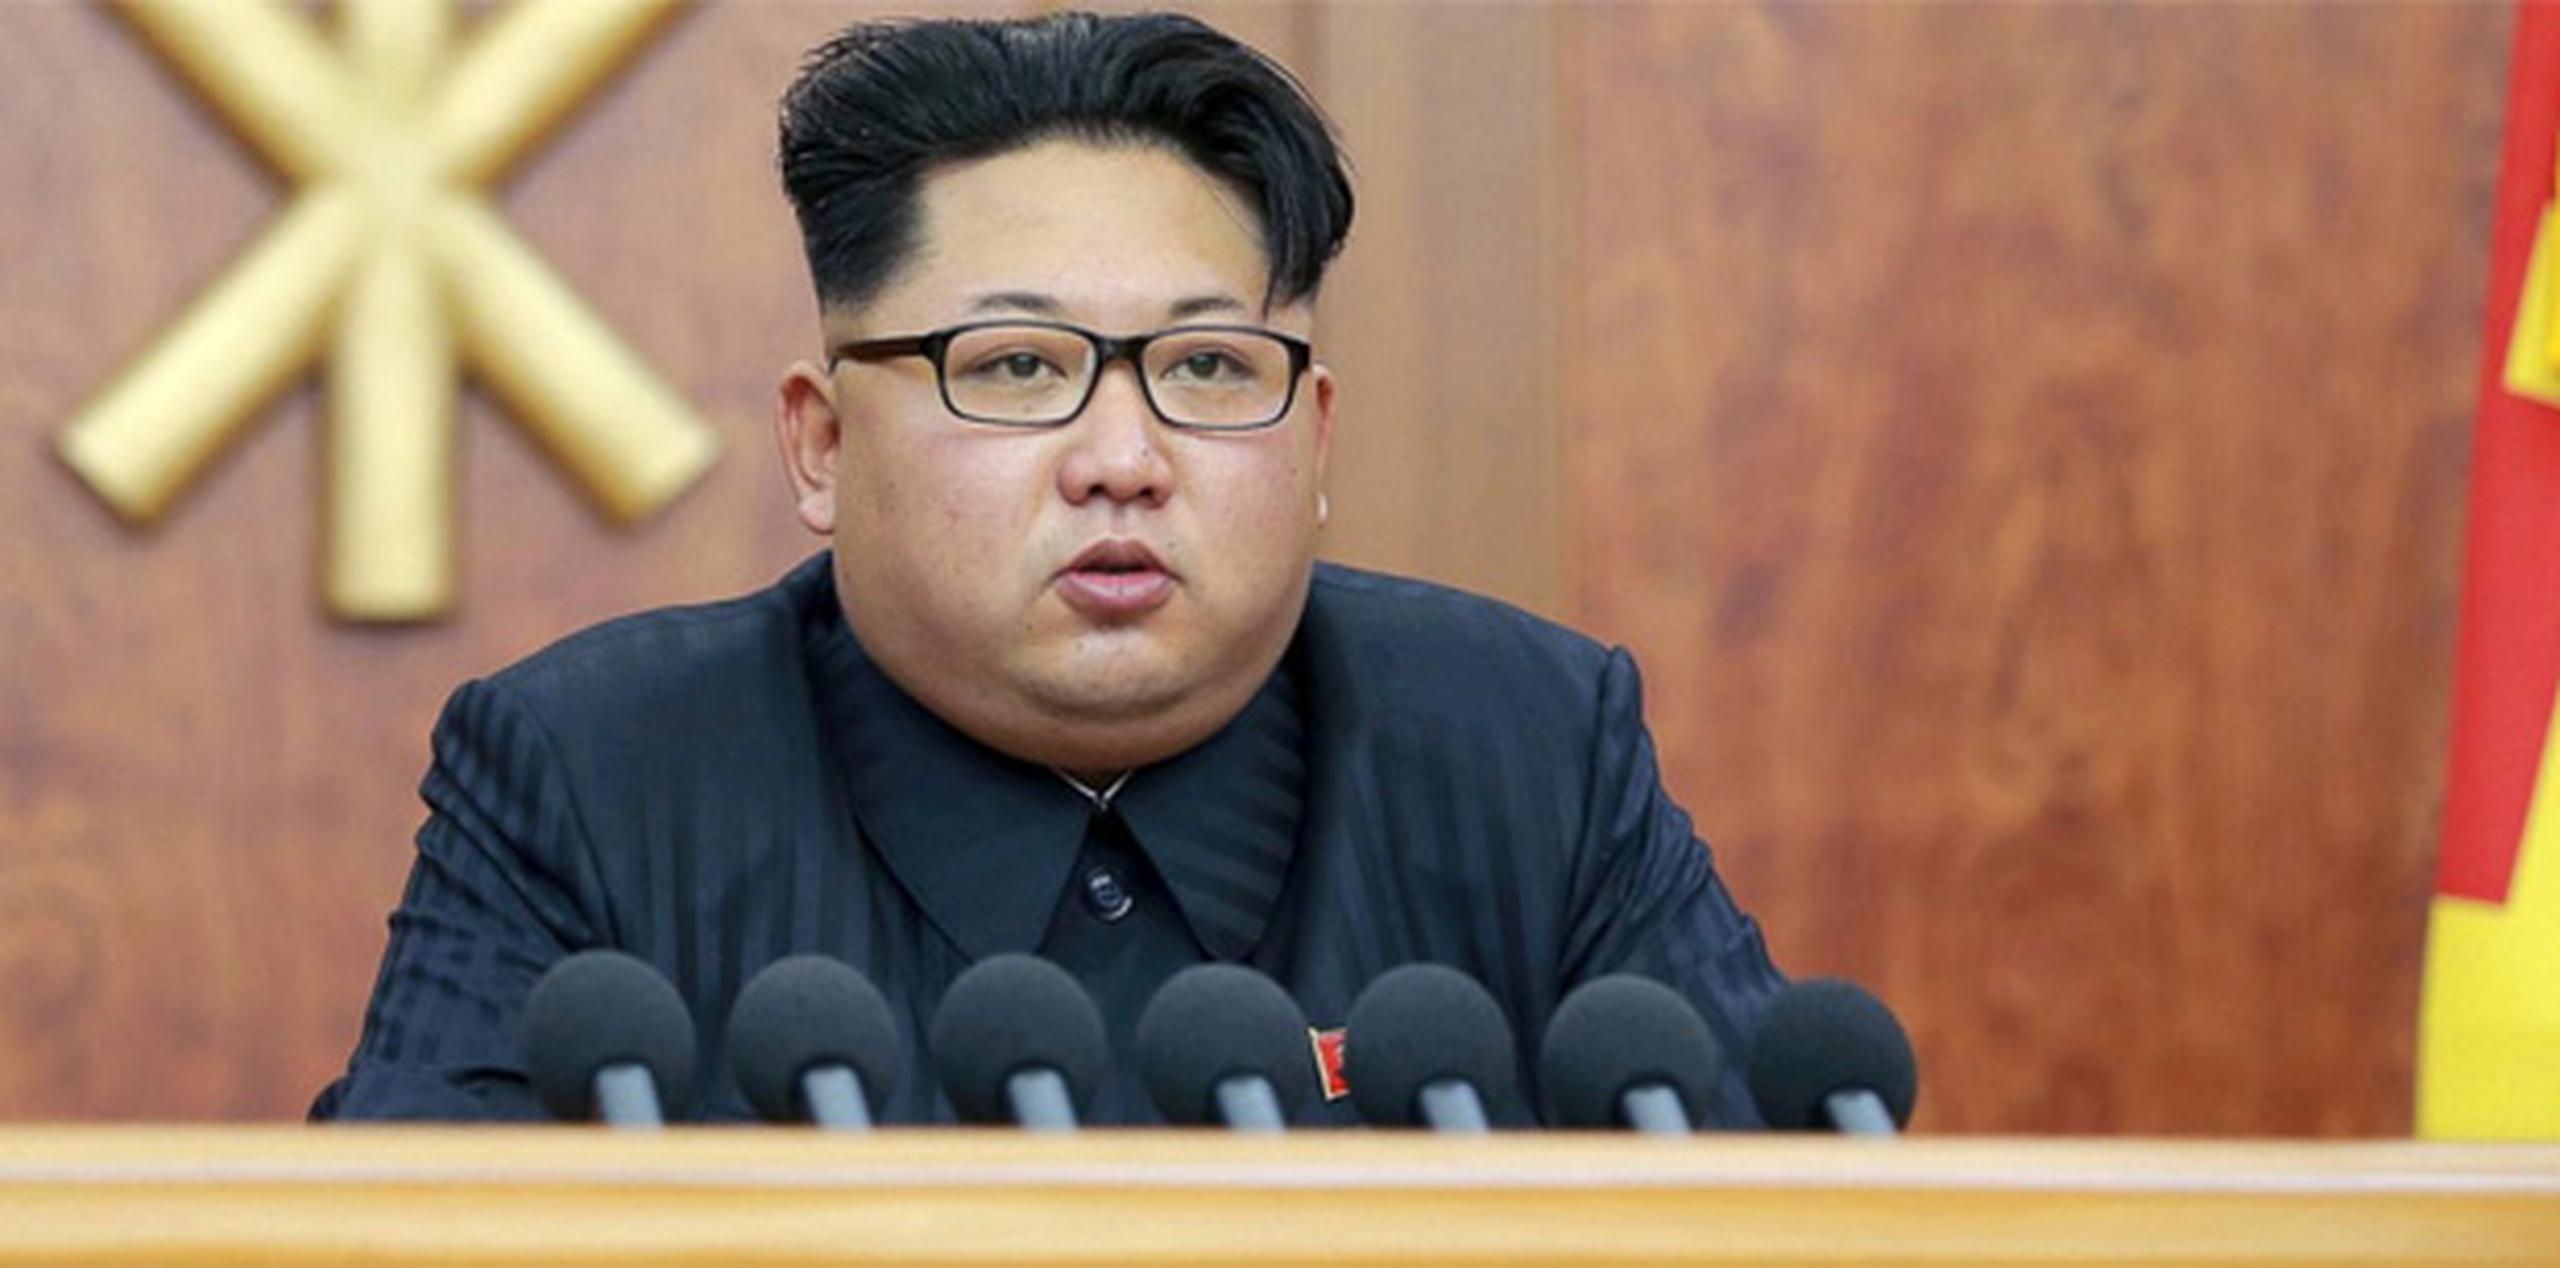 Si Corea del Norte logra desarrollar la tecnología necesaria para lanzar misiles desde submarinos plenamente operativos, se trataría de un enorme salto armamentístico. En la foto, el dictador Kim Jong-un. (Archivo)